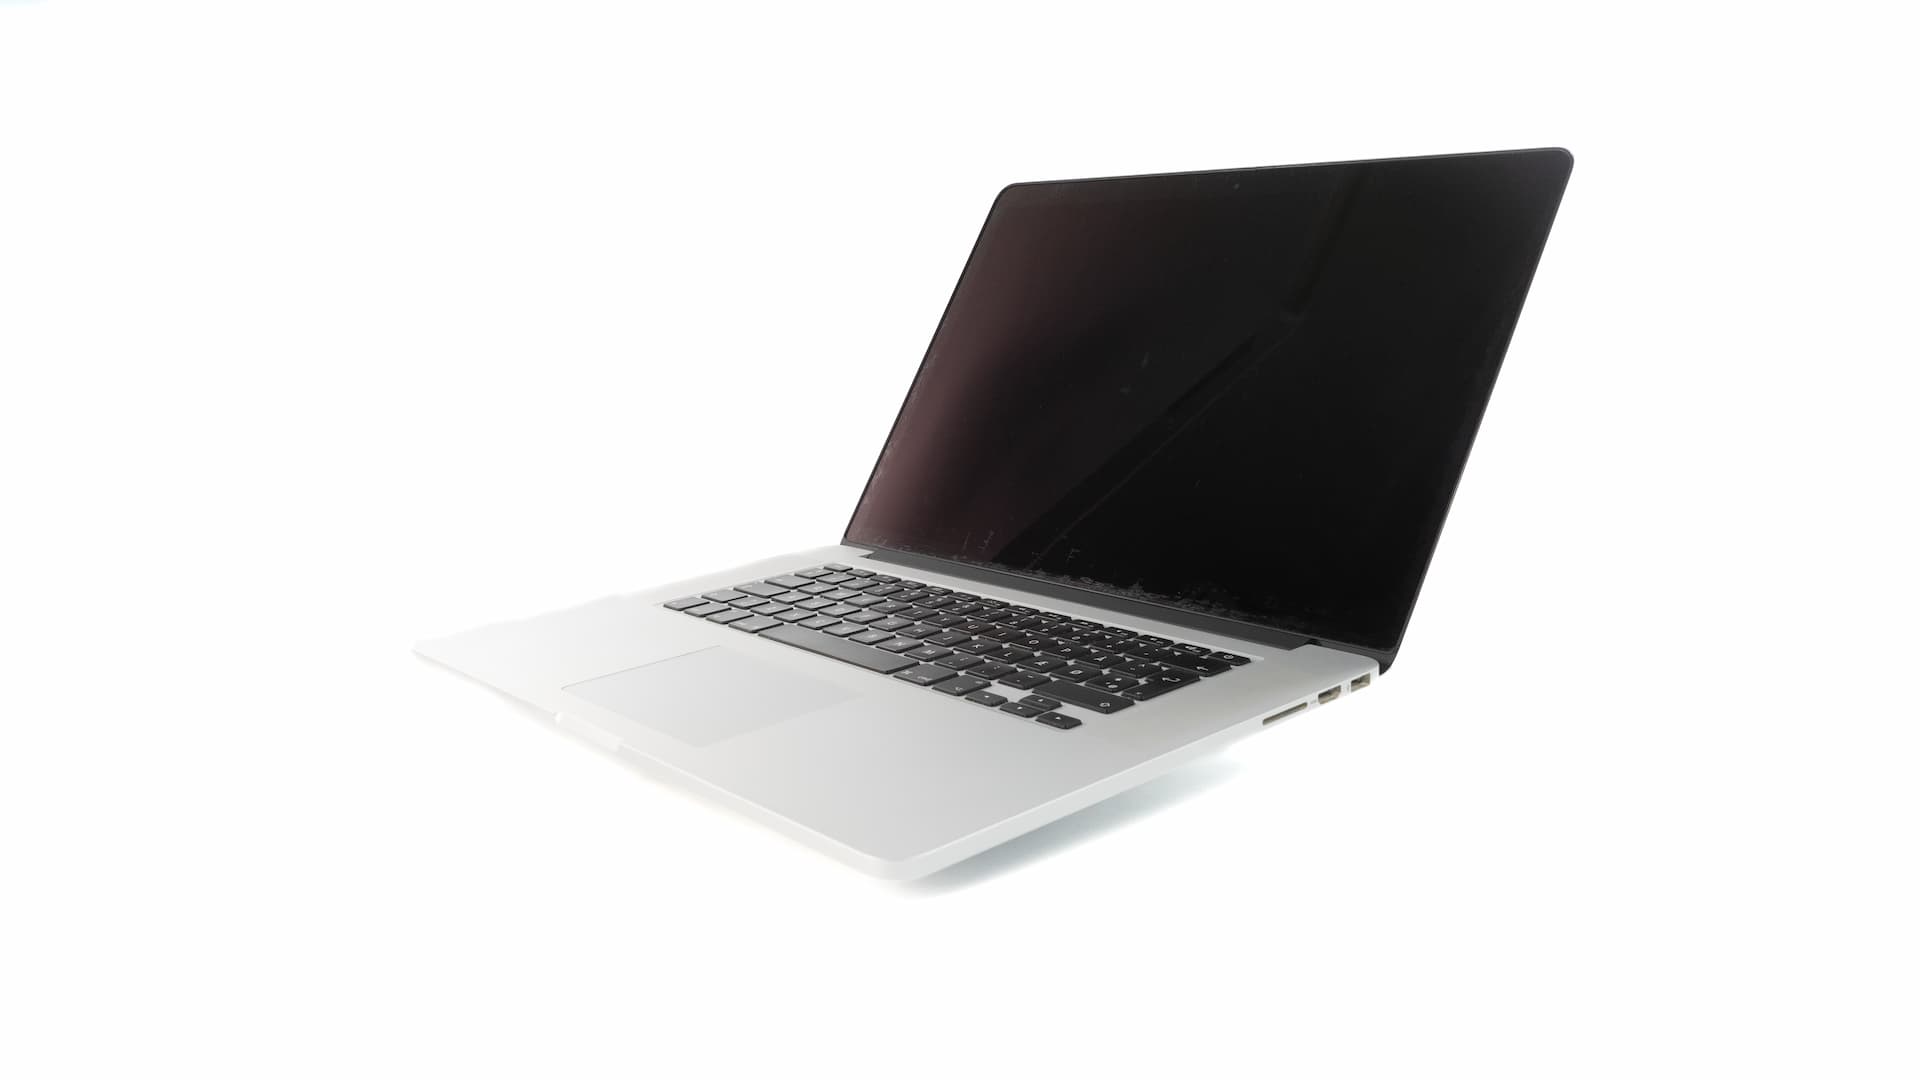 MacBook-Pro-Late-2013-1-1.jpg Brugte computere